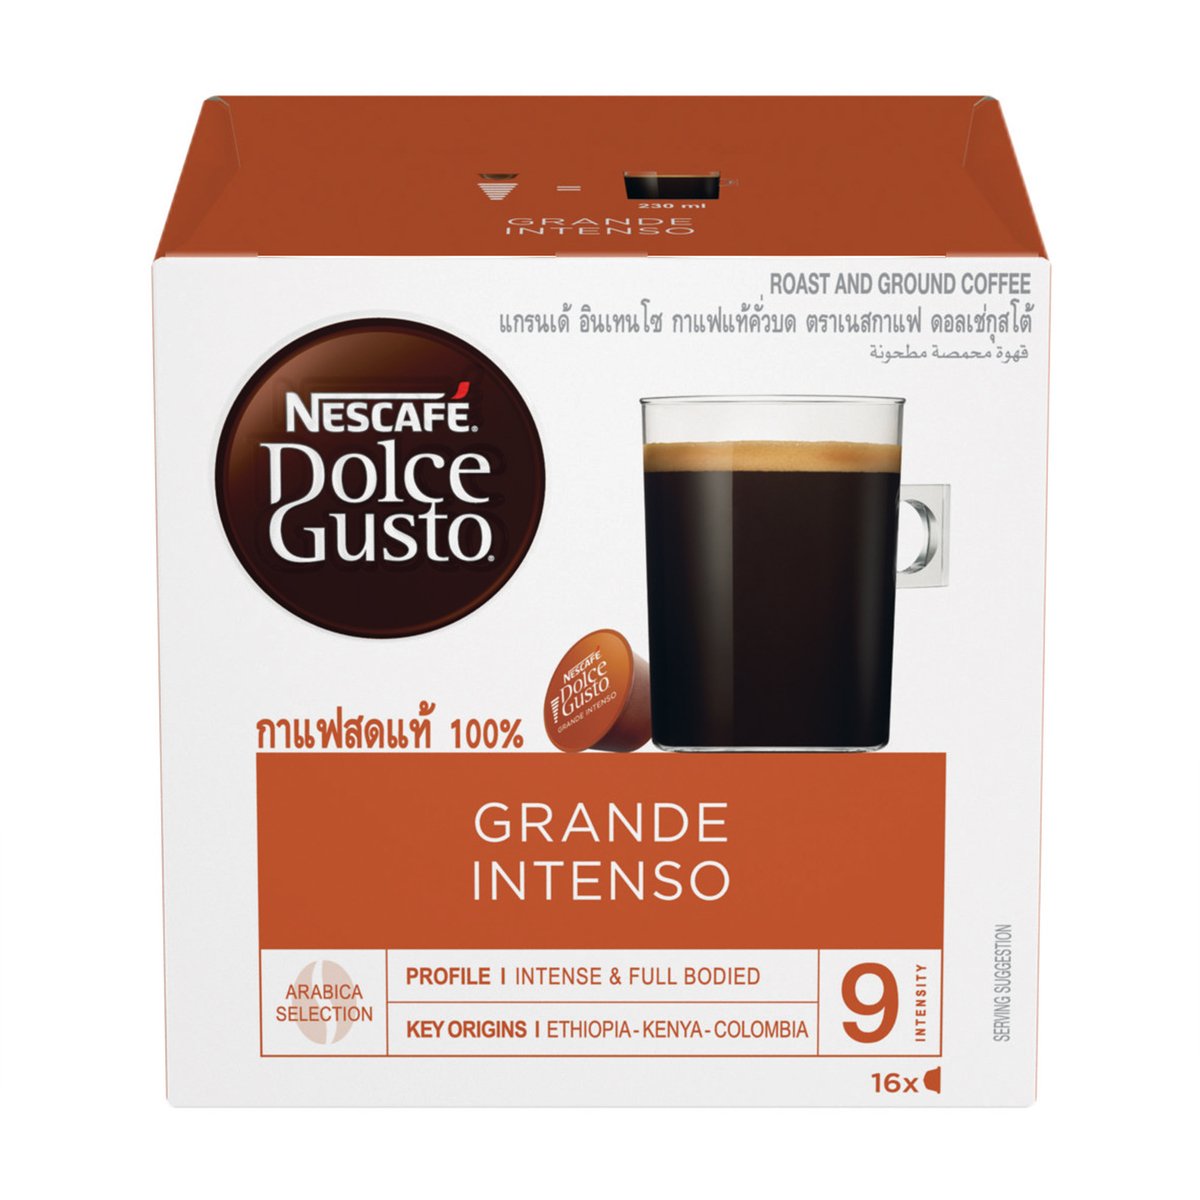 Nescafe Dolce Gusto Grande Intenso Coffee Capsules 16pcs